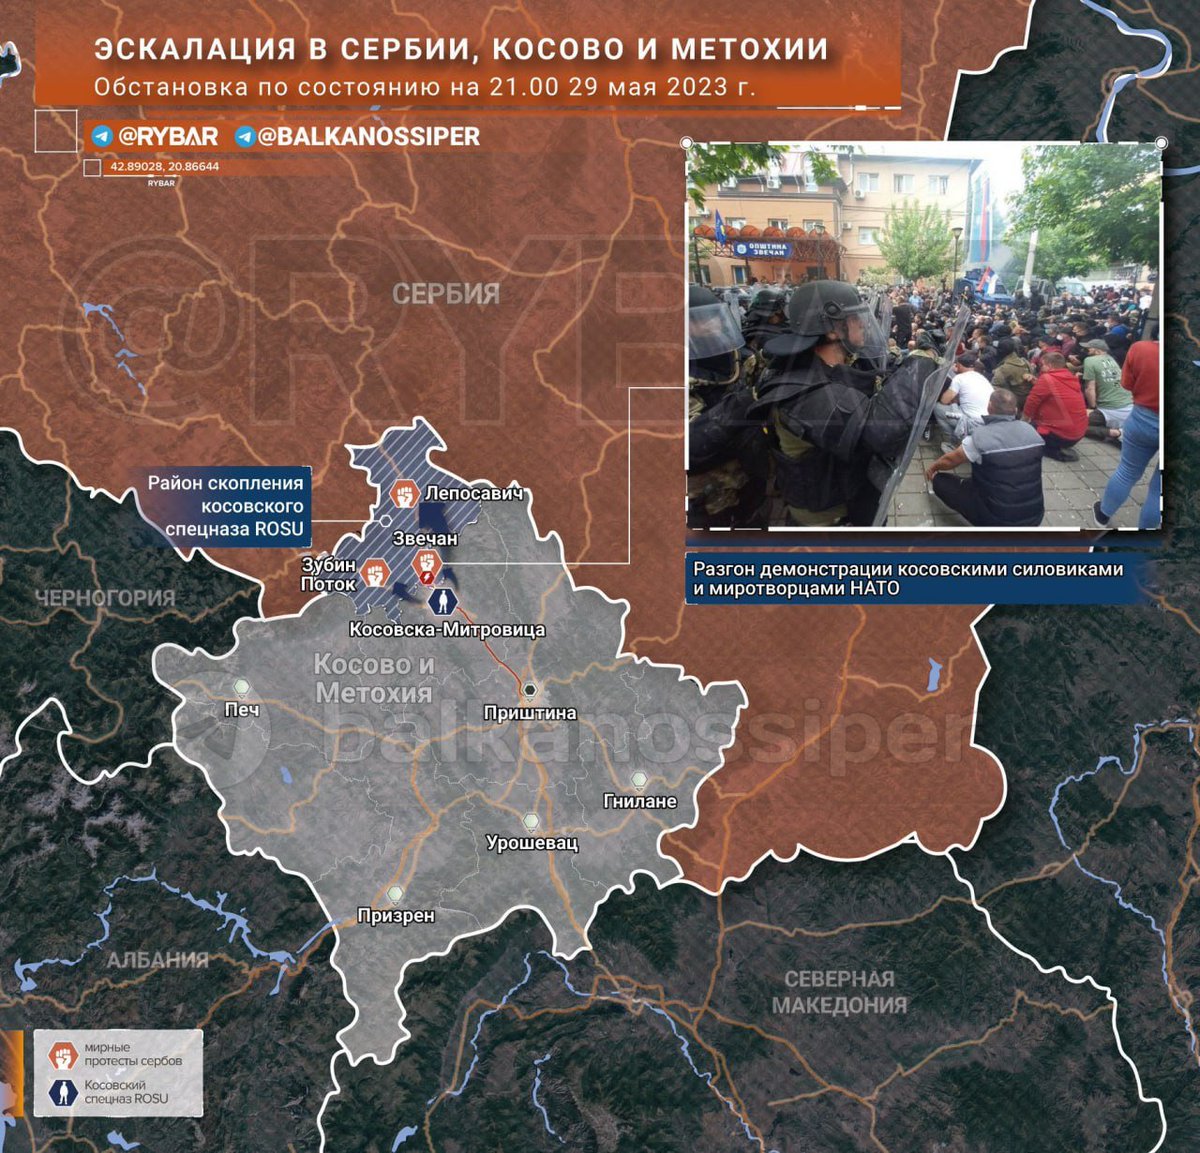 Serbia desplegó sus Fuerzas Armadas cerca de la frontera con Kosovo, anunció el presidente serbio A. Vucic durante un discurso urgente a la nación
El min de Defensa Serbio, M. Vucevic, subrayó que el Ejército se encuentra en alerta máxima debido a la situación en Kosovo y Metojia